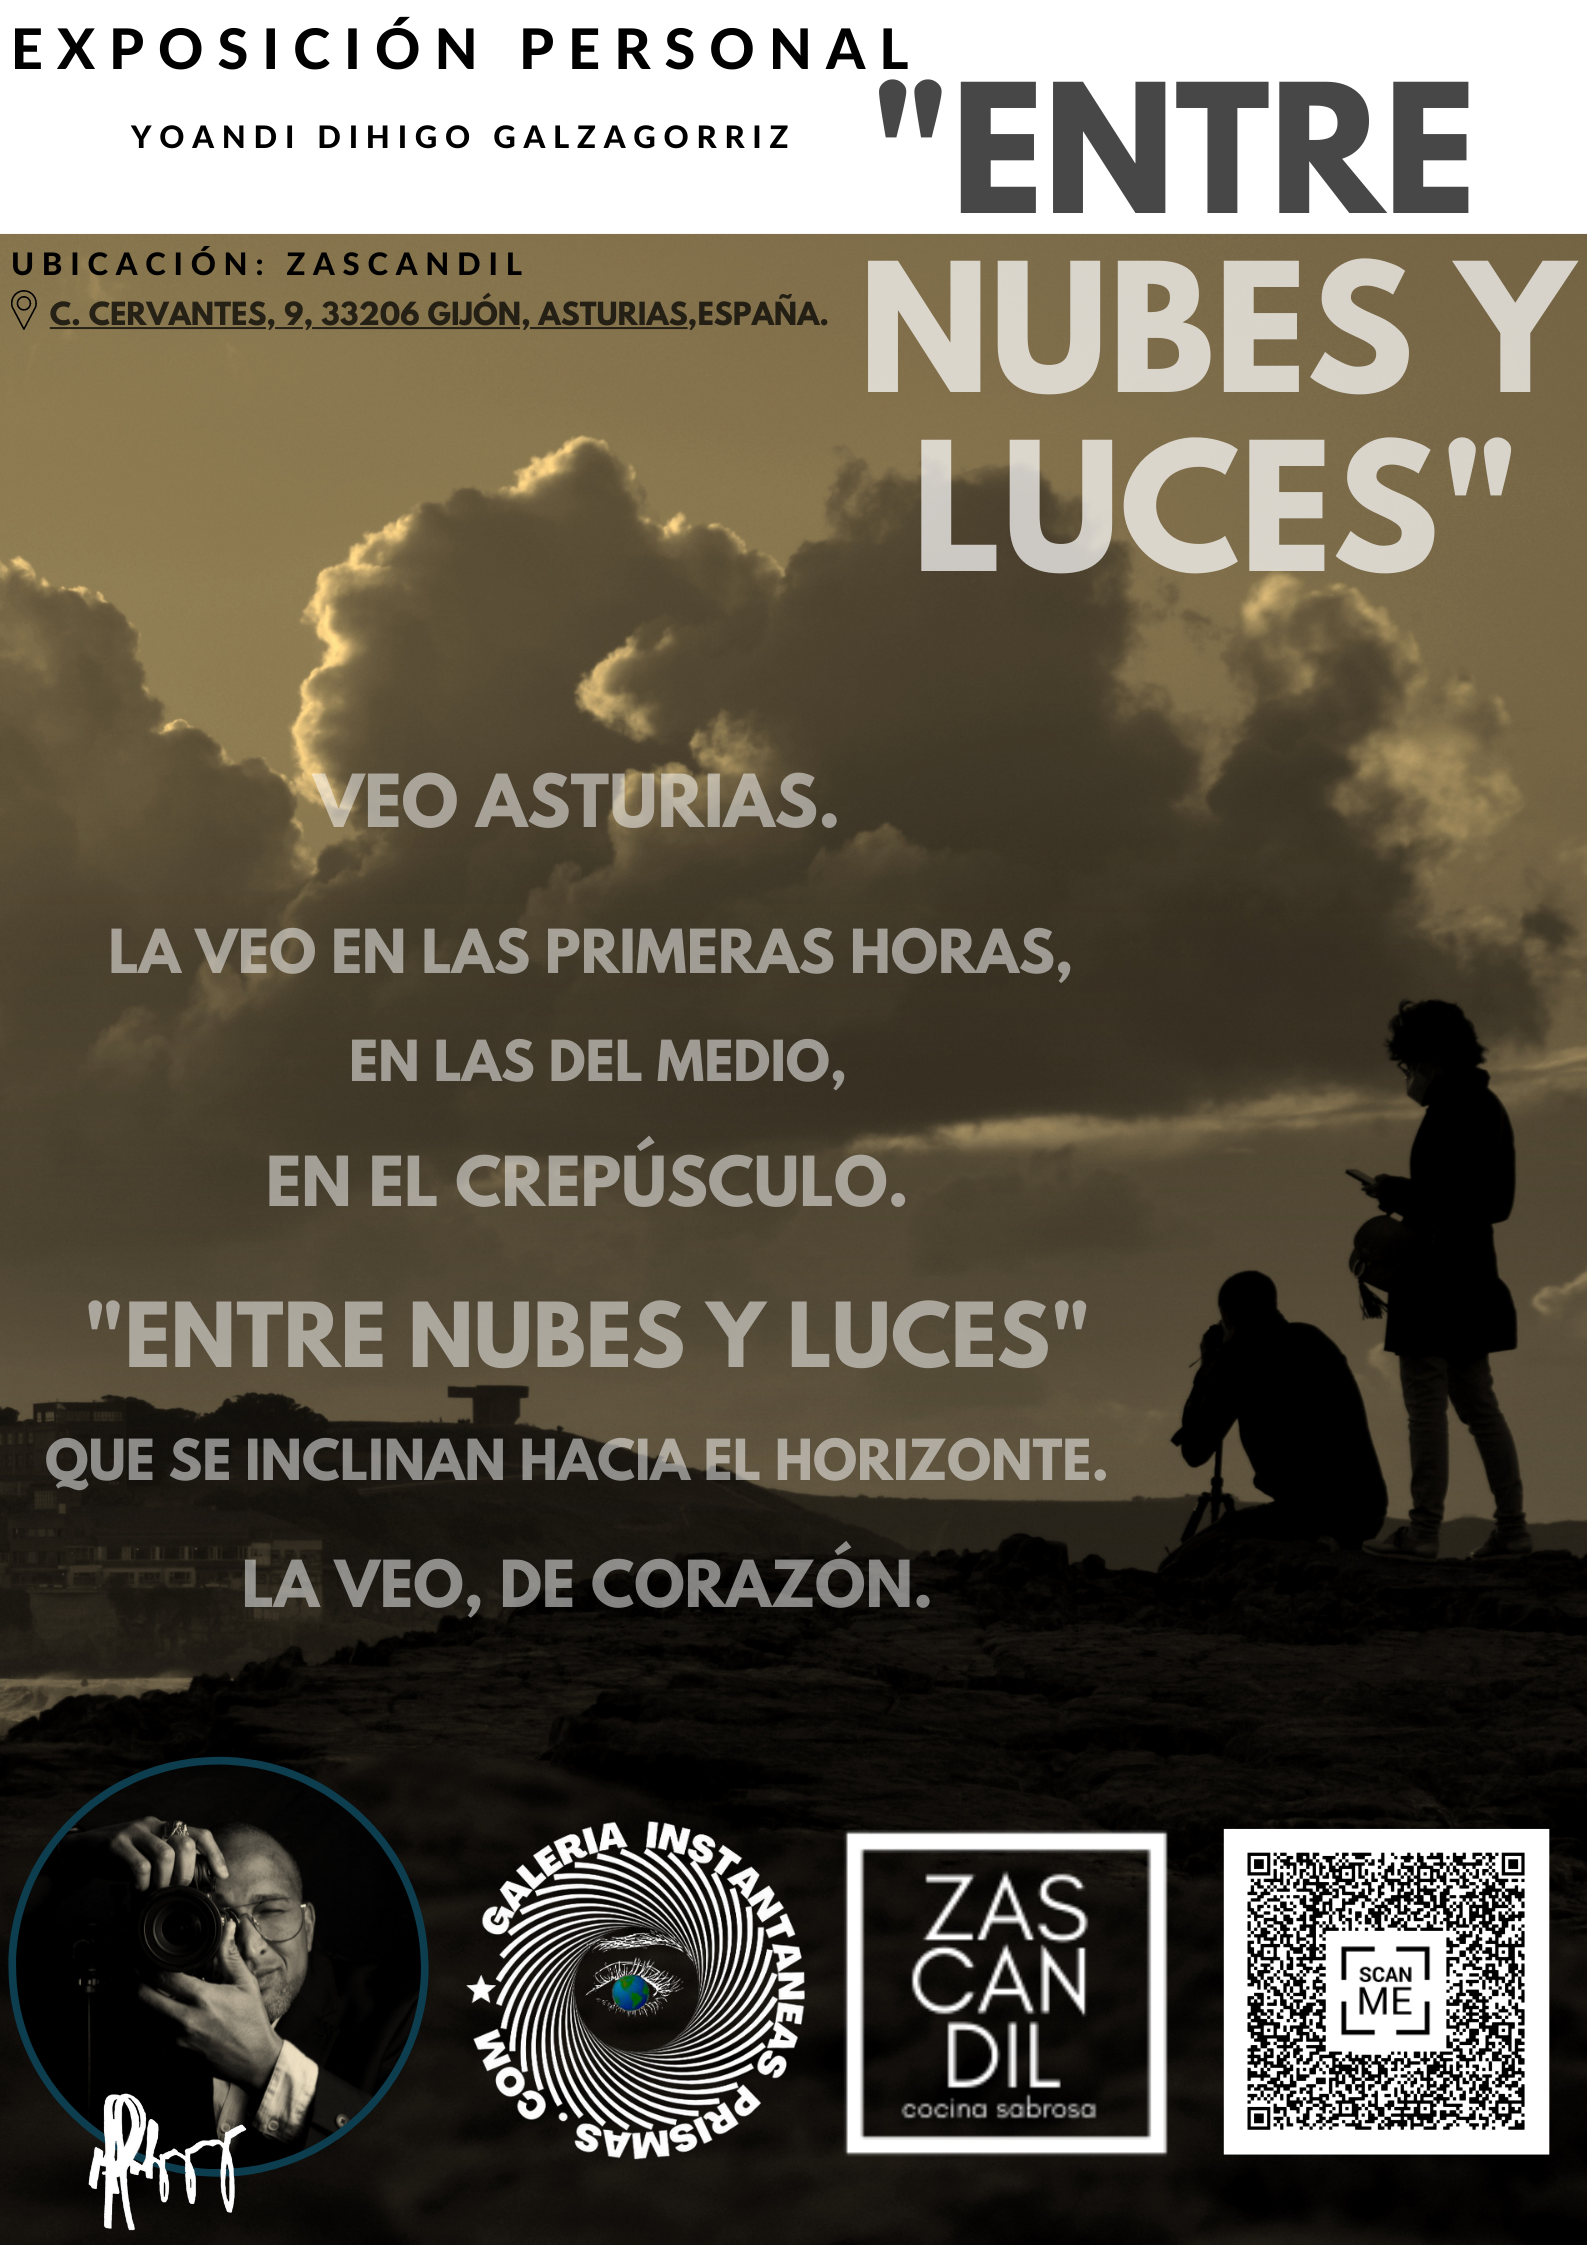 «ENTRE NUBES Y LUCES», exposición personal (física) de  Yoandi Dihigo Galzagorriz.  En ZASCANDIL, Gijón, Asturias, España.